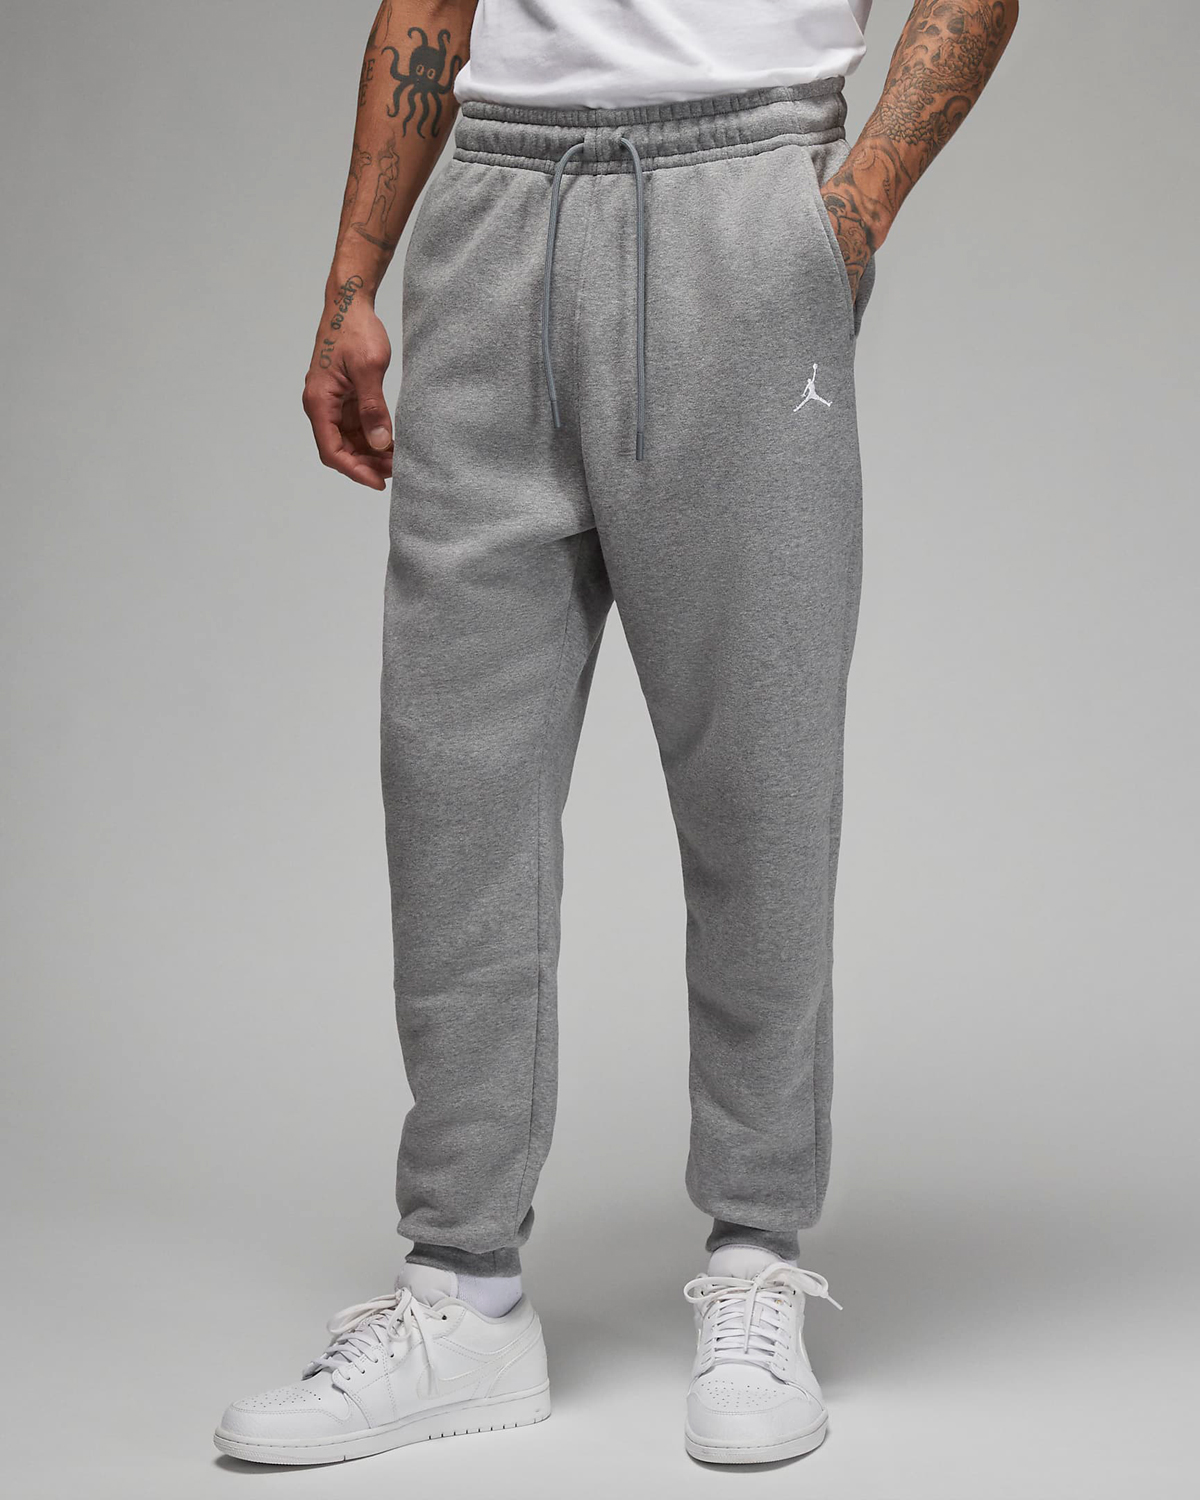 Jordan-Essentials-Fleece-Pants-Grey-Carbon-Heather